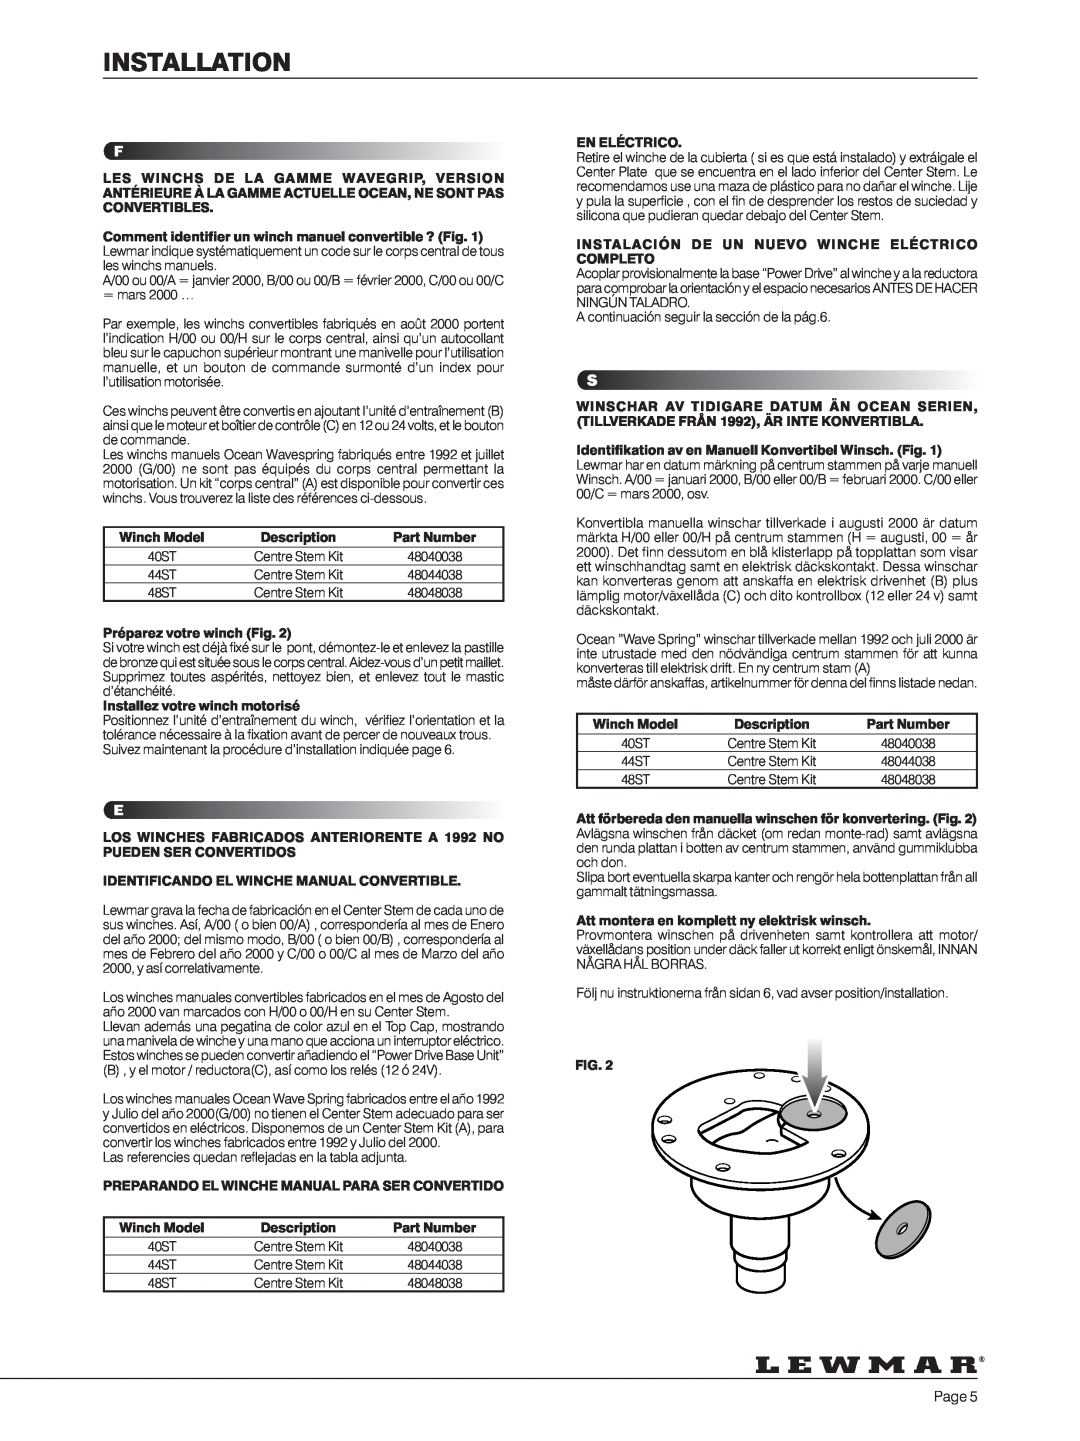 Lewmar 40-111 manual Installation, Winch Model, Description, Part Number, Préparez votre winch Fig, En Eléctrico 